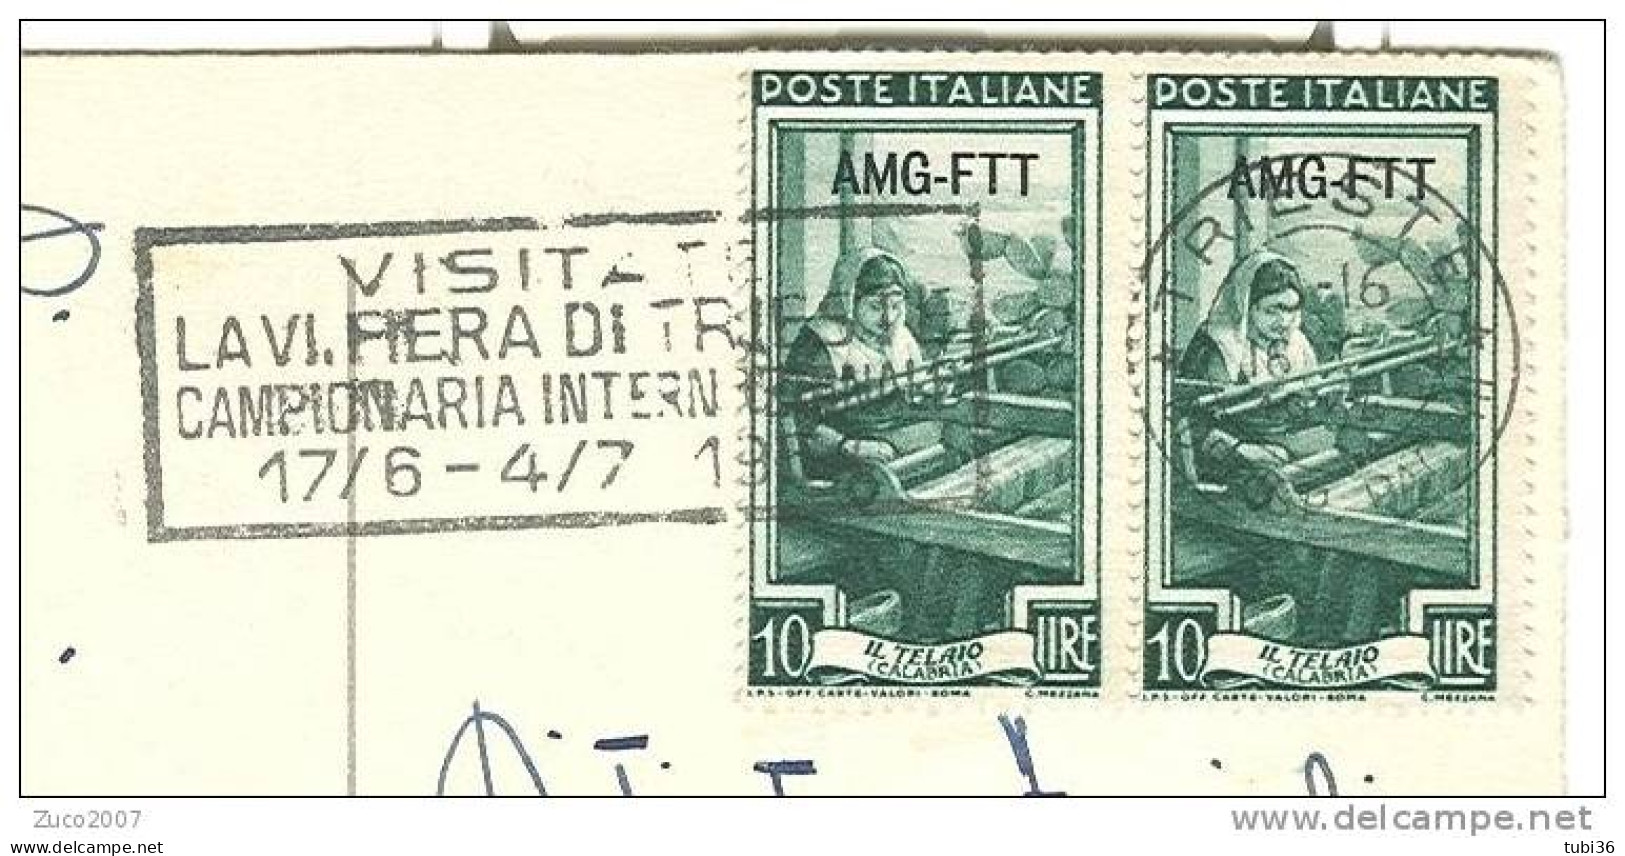 AFFRANCATURA ITALIA LAVORO AMF-FTT £.10 X 2 - CON TMBRO TRIESTE  E TARGHETTA  VISITATE LA FIERA DI TRIESTE  1954. - Marcophilia